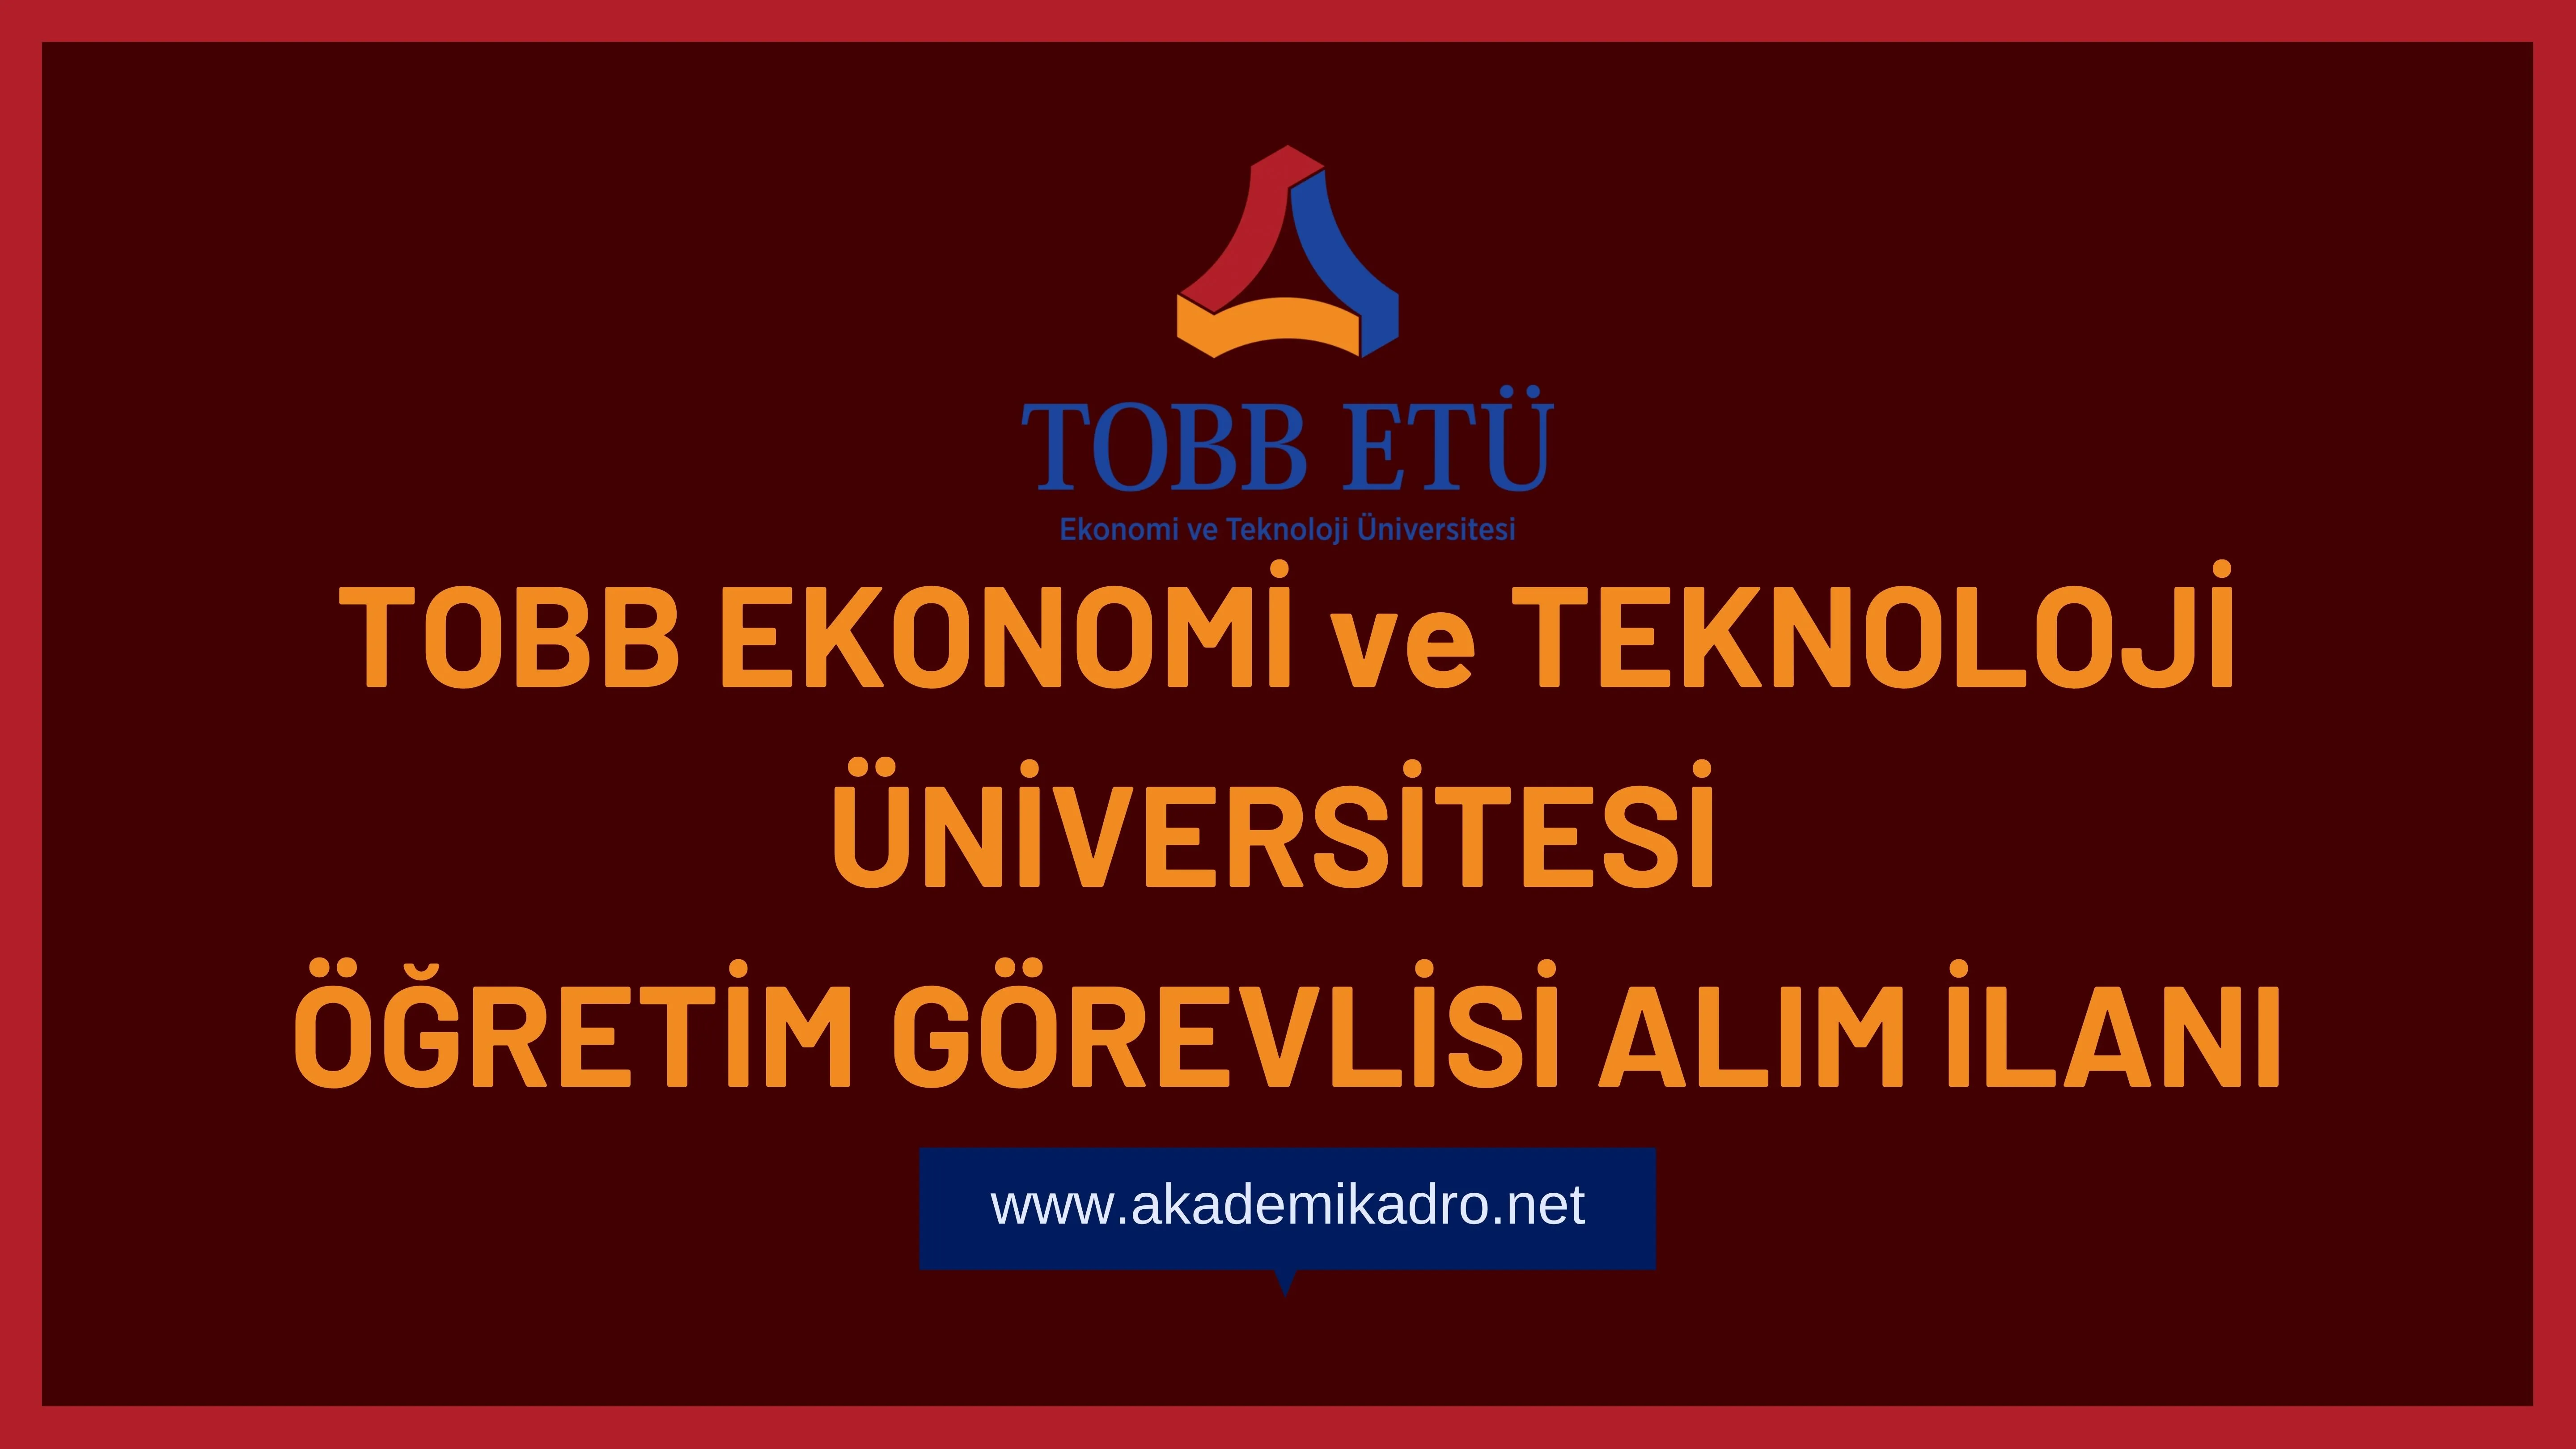 TOBB Ekonomi ve Teknoloji Üniversitesi 2 Öğretim görevlisi alacak.